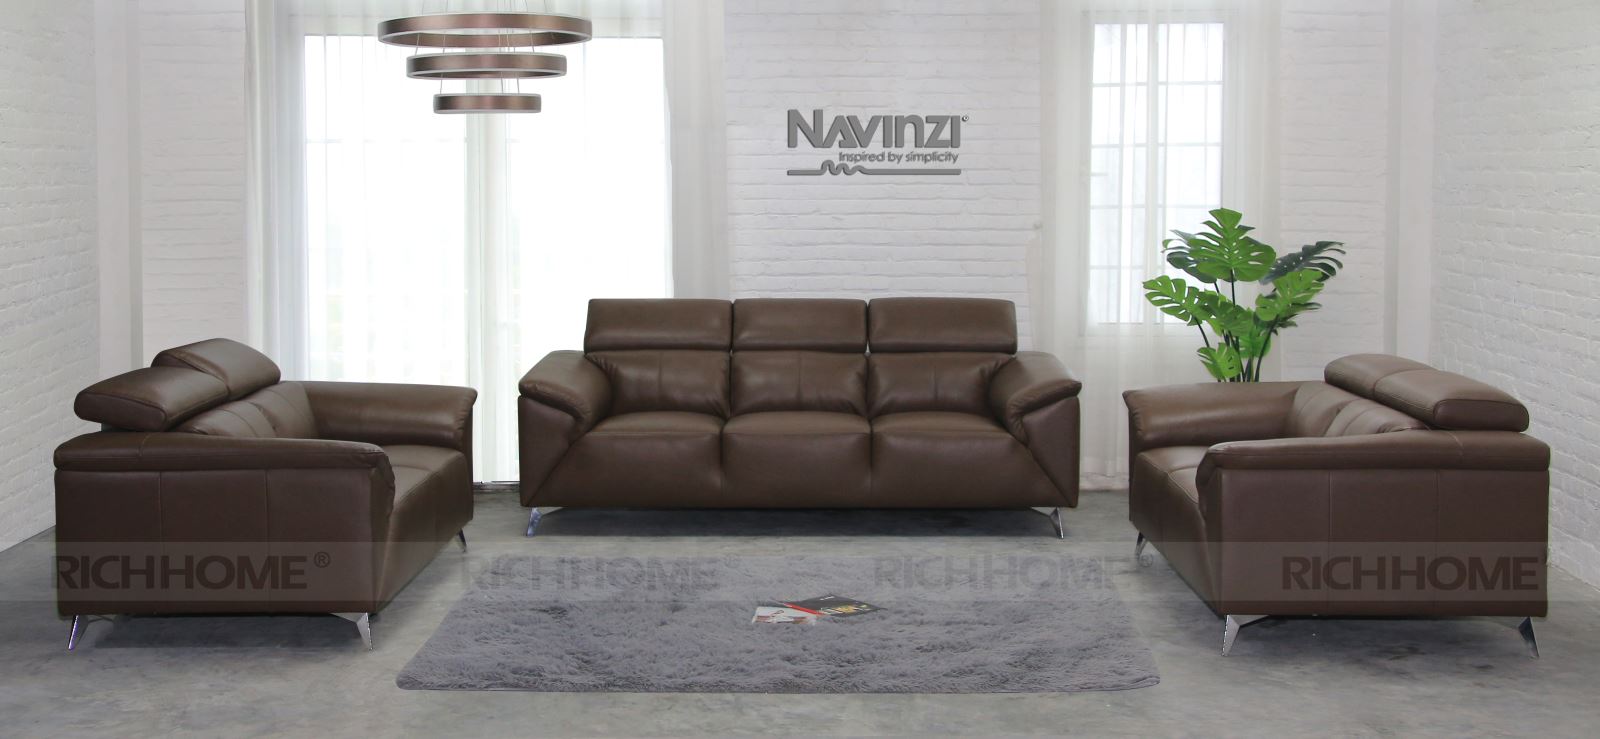 Tổng hợp các mẫu sofa đẹp 2020 dành cho văn phòng - Ảnh 7